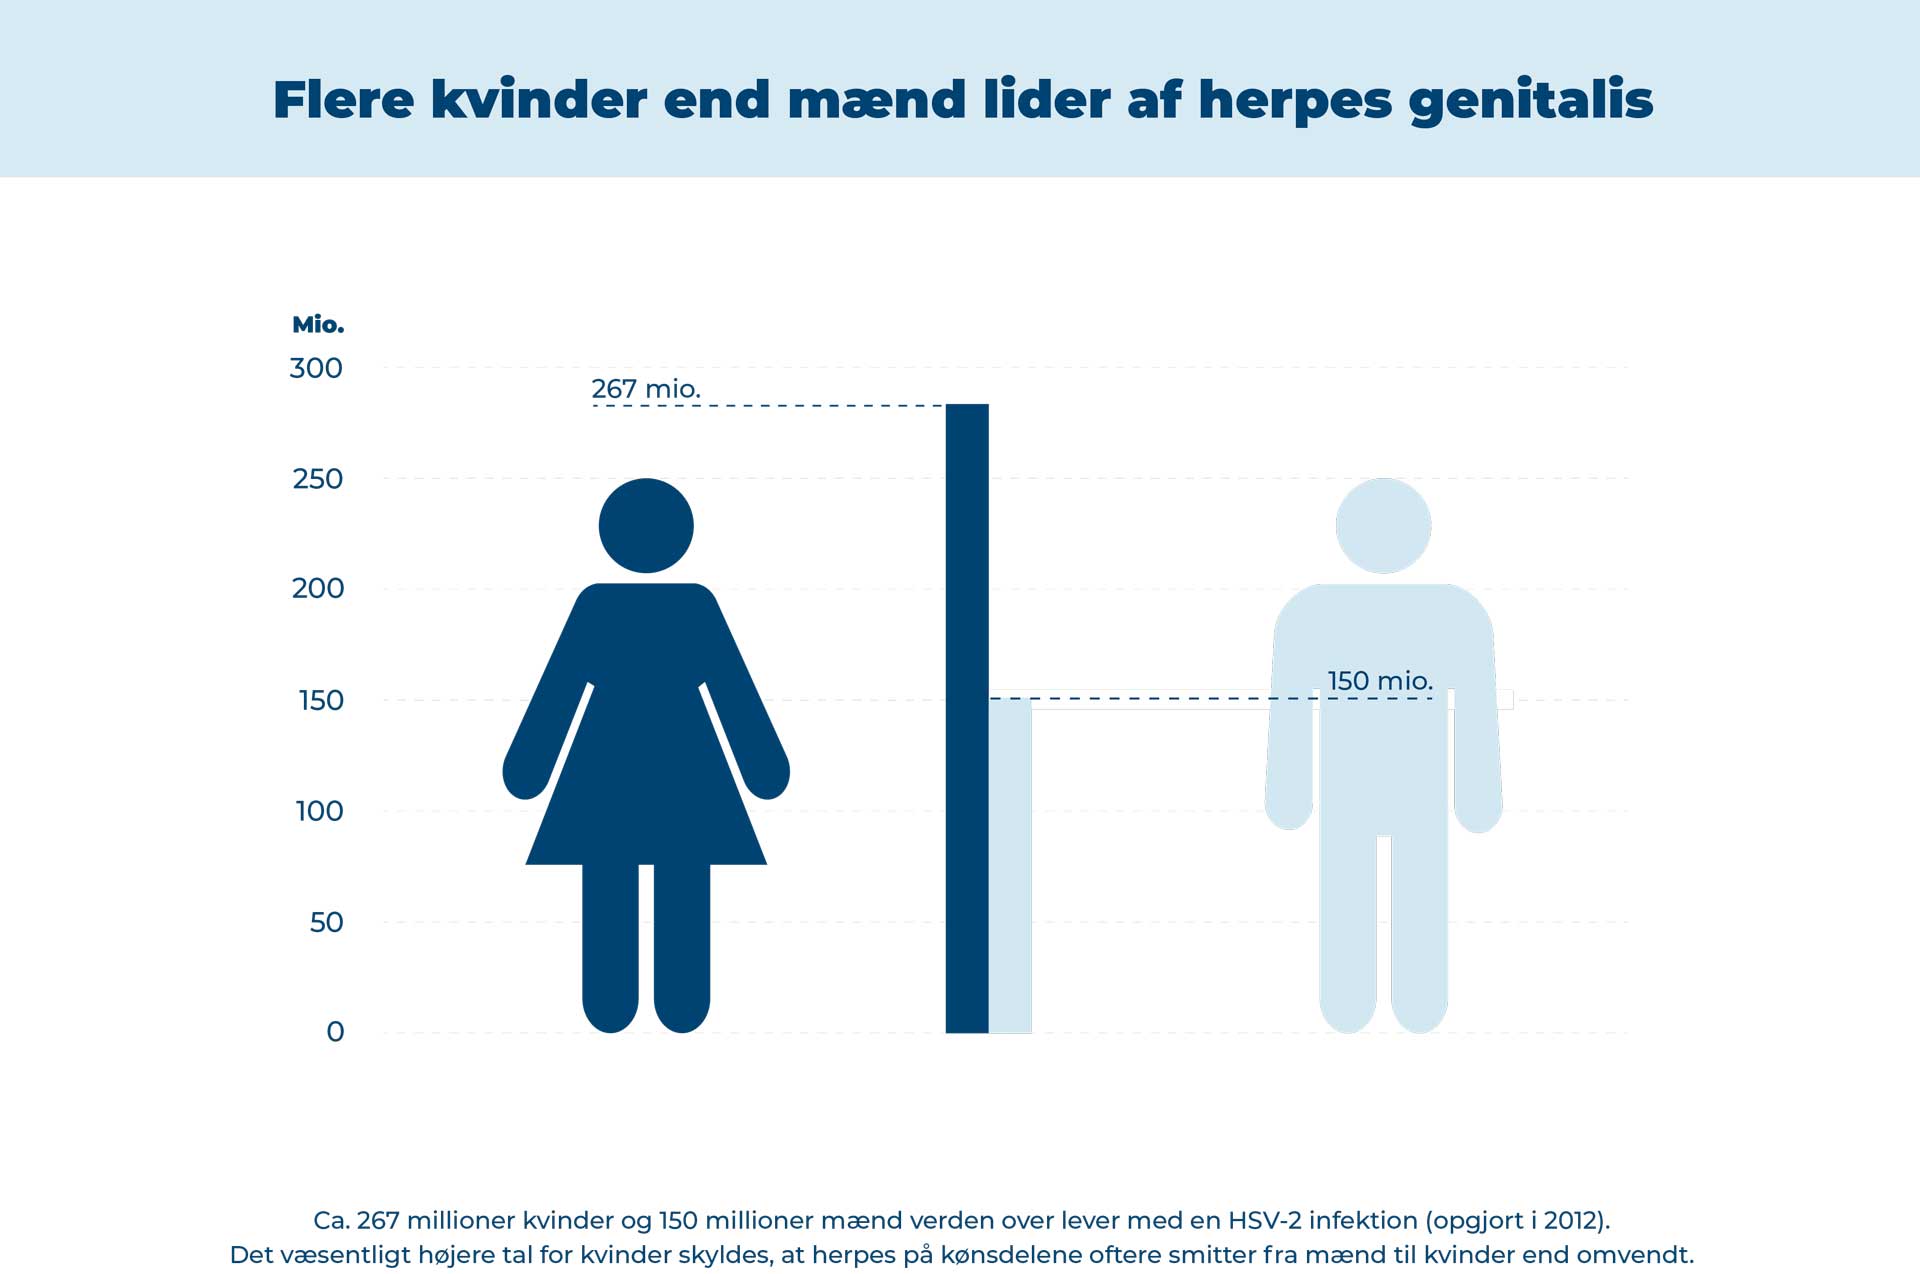 Kvinder oftere smittet med herpes end mænd